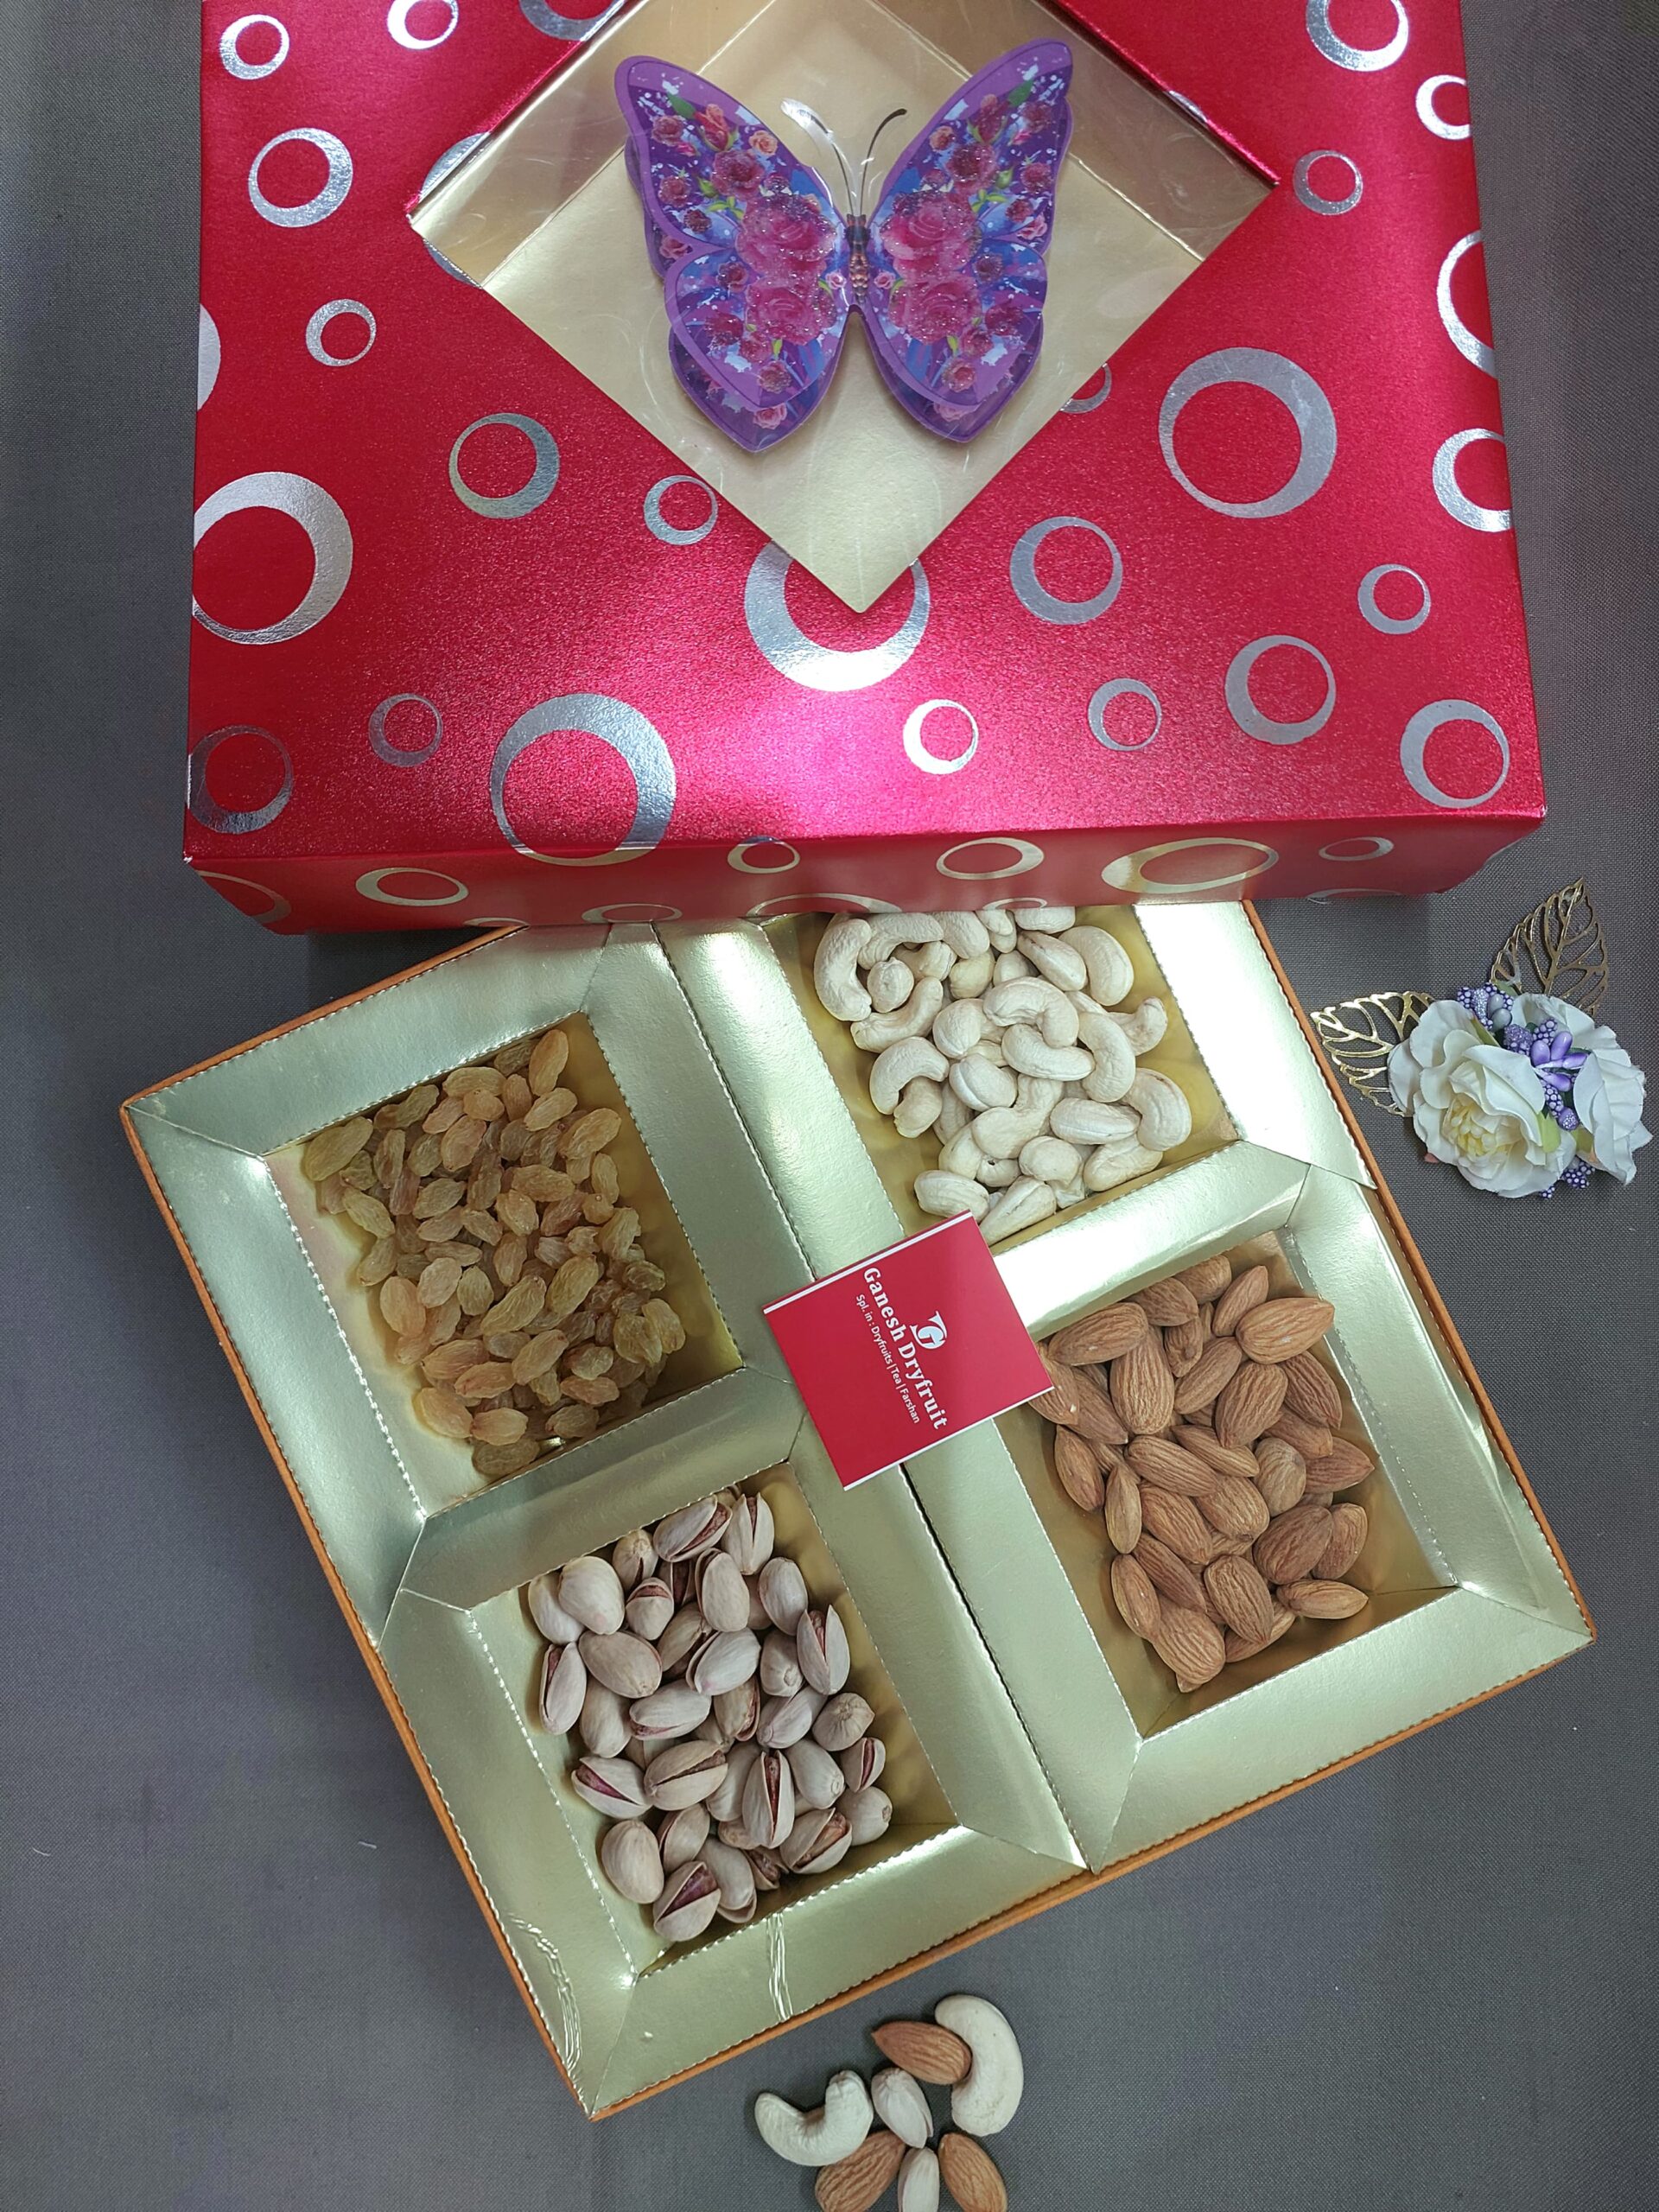 Dryfruits Gift Box